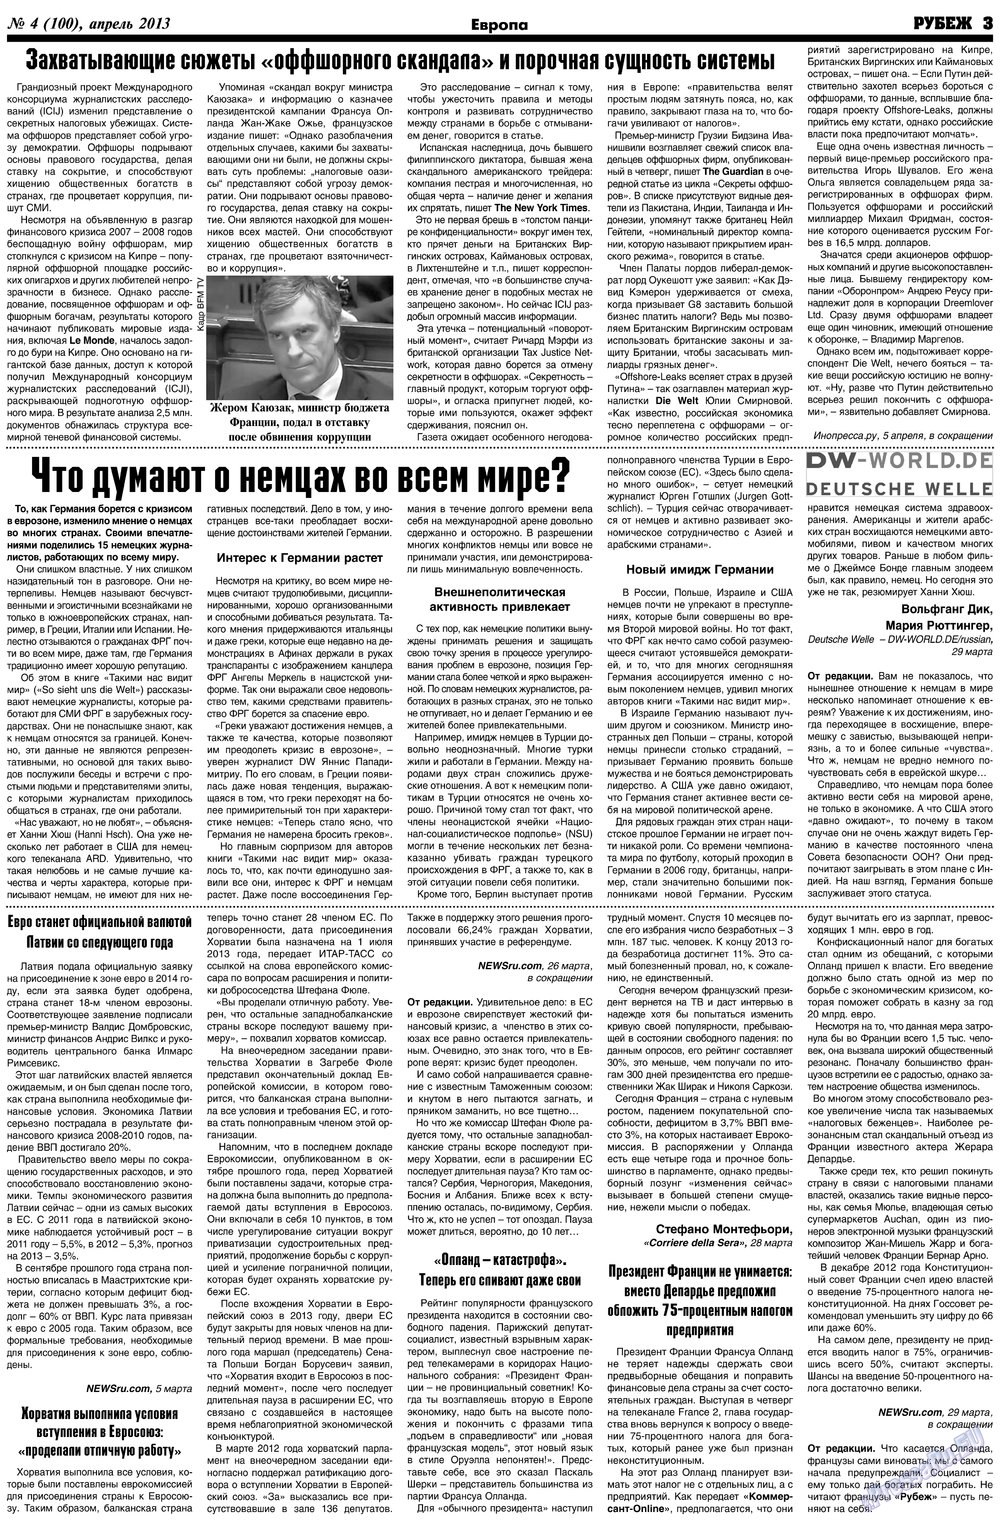 Рубеж (газета). 2013 год, номер 4, стр. 3